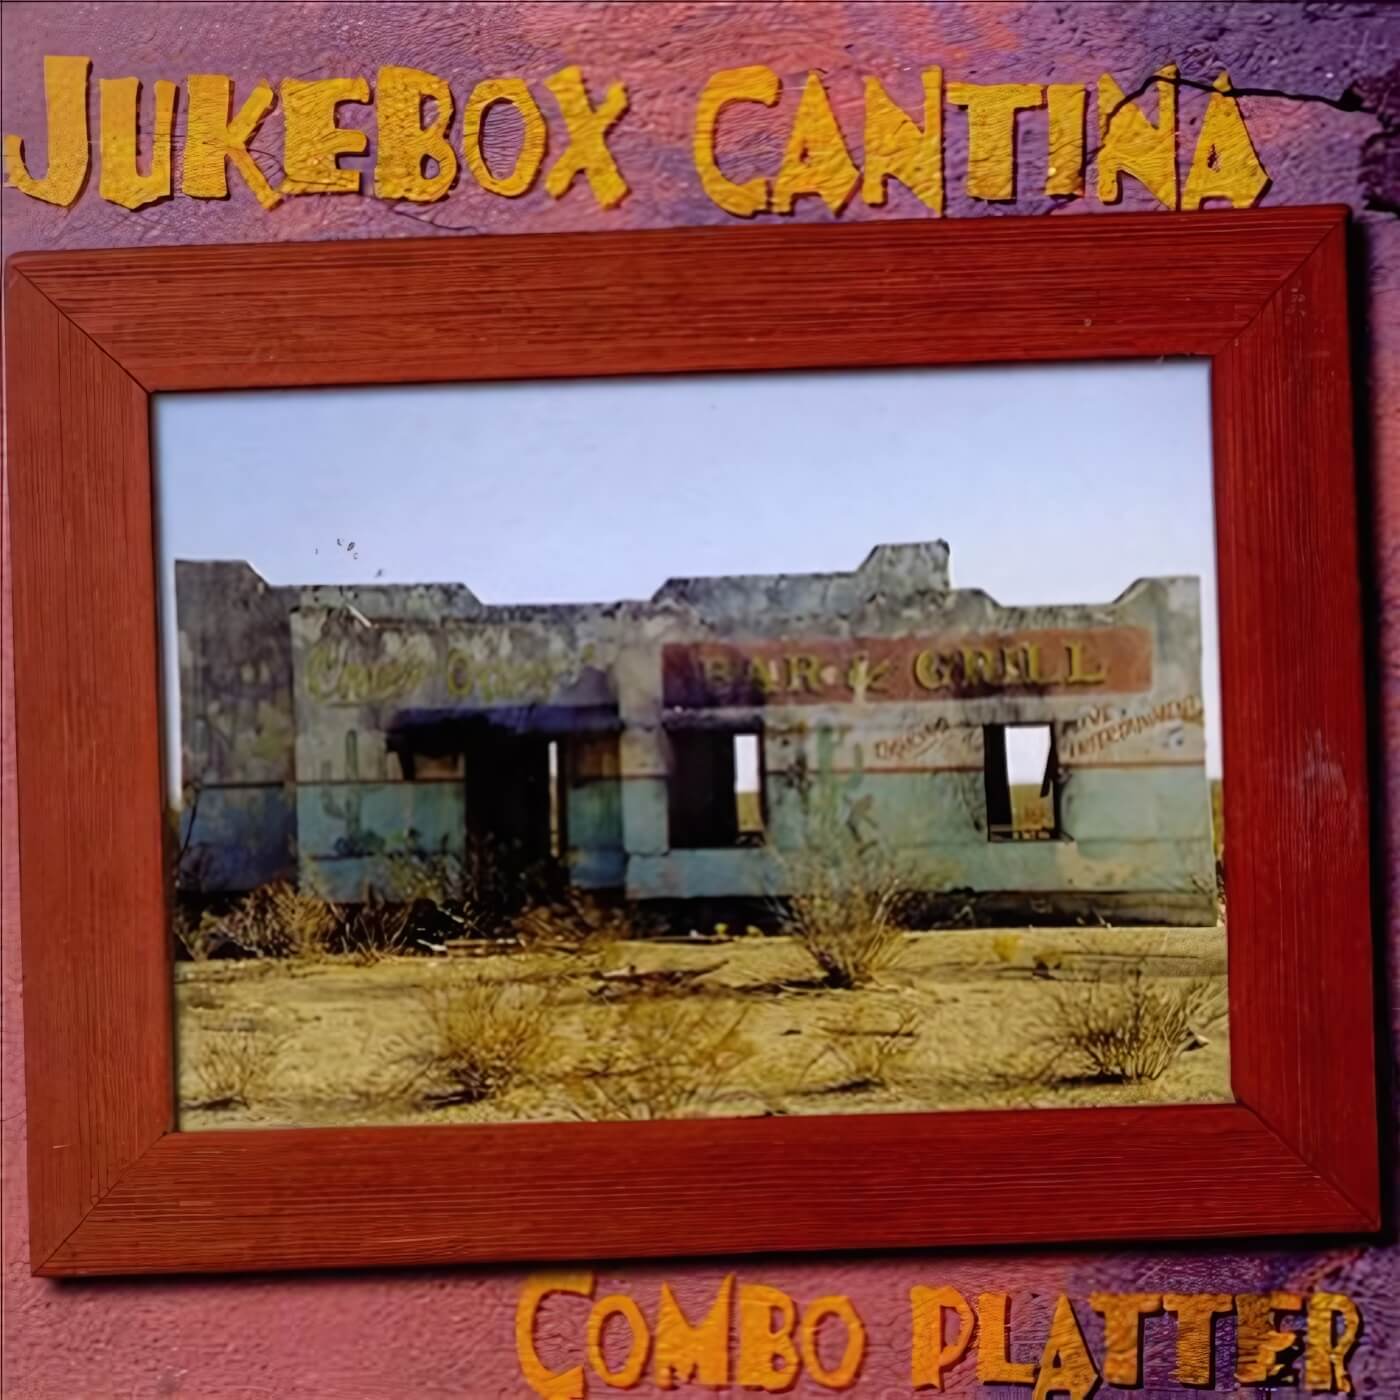 Jukebox Cantina Combo Platter